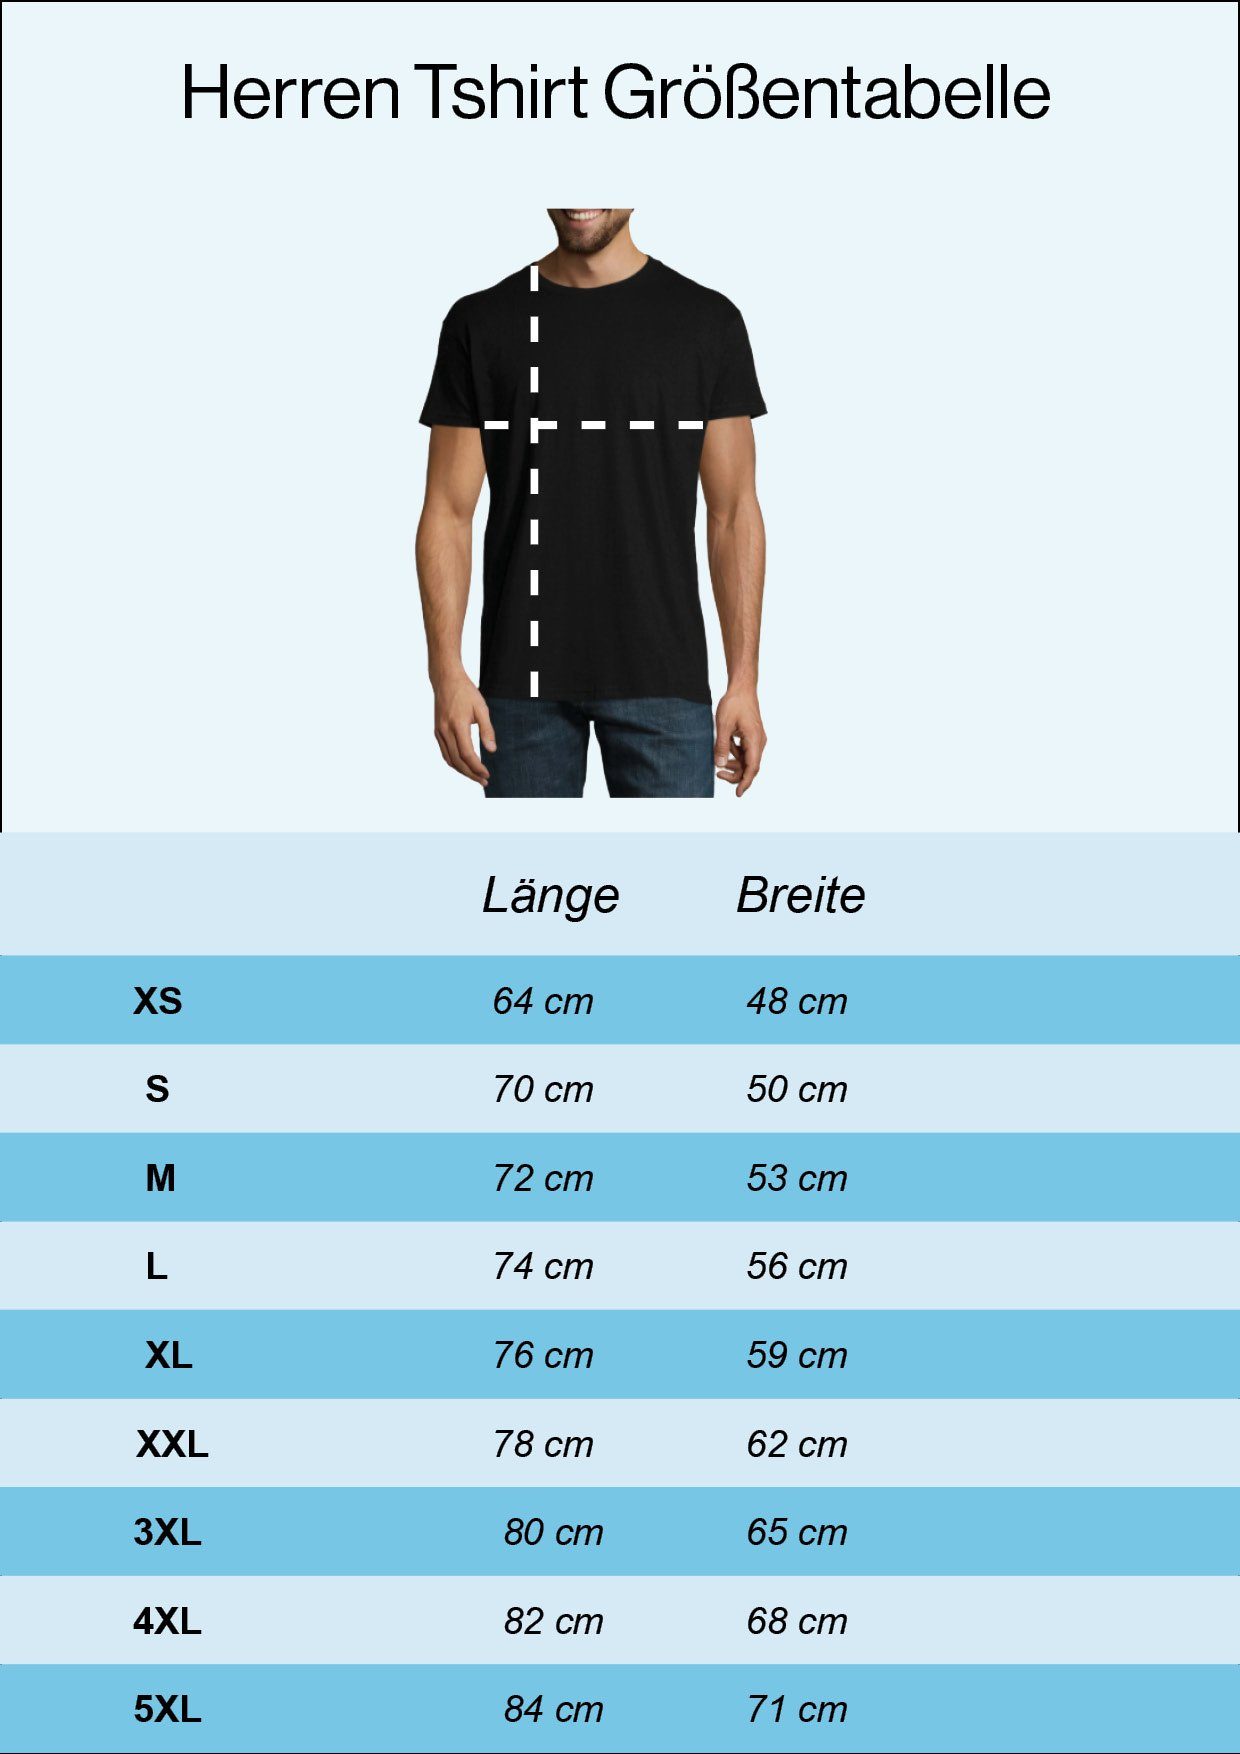 Designz Mit T-Shirt Youth Weiß T-Shirt trendigem Herren Mario Frontprint